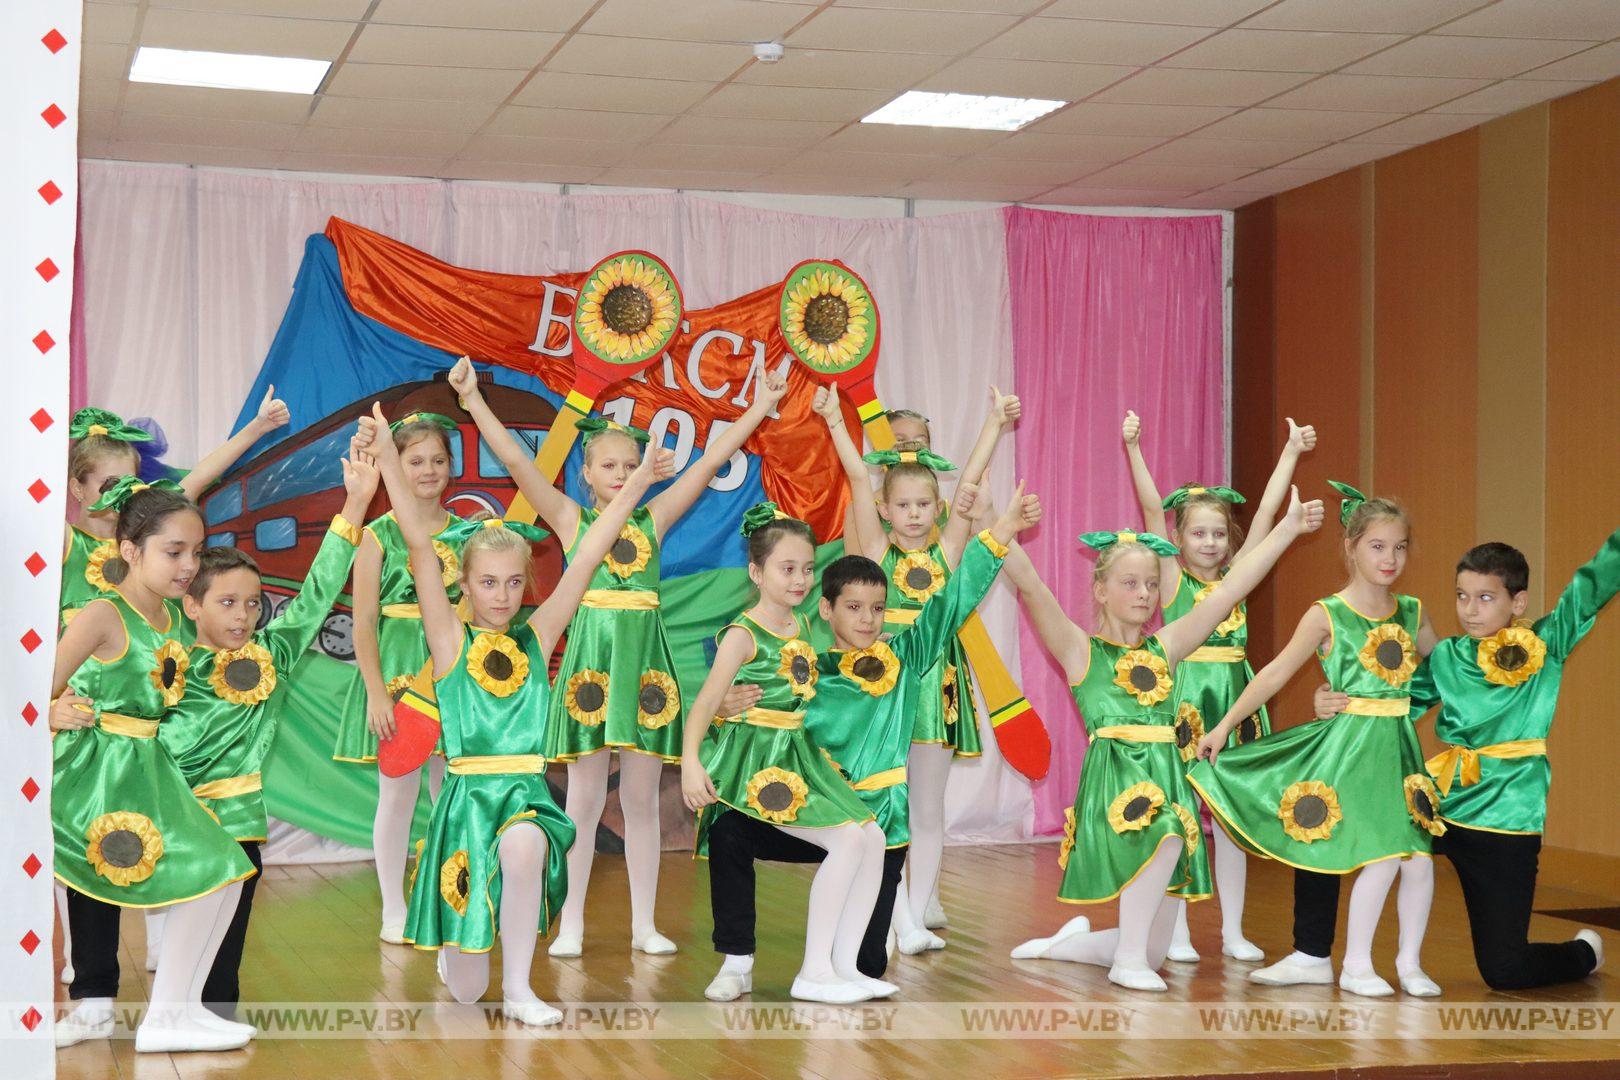 В районном центре творчества детей и молодежи накануне славной даты состоялось торжественное мероприятие «Комсомолу – 105: диалог поколений»